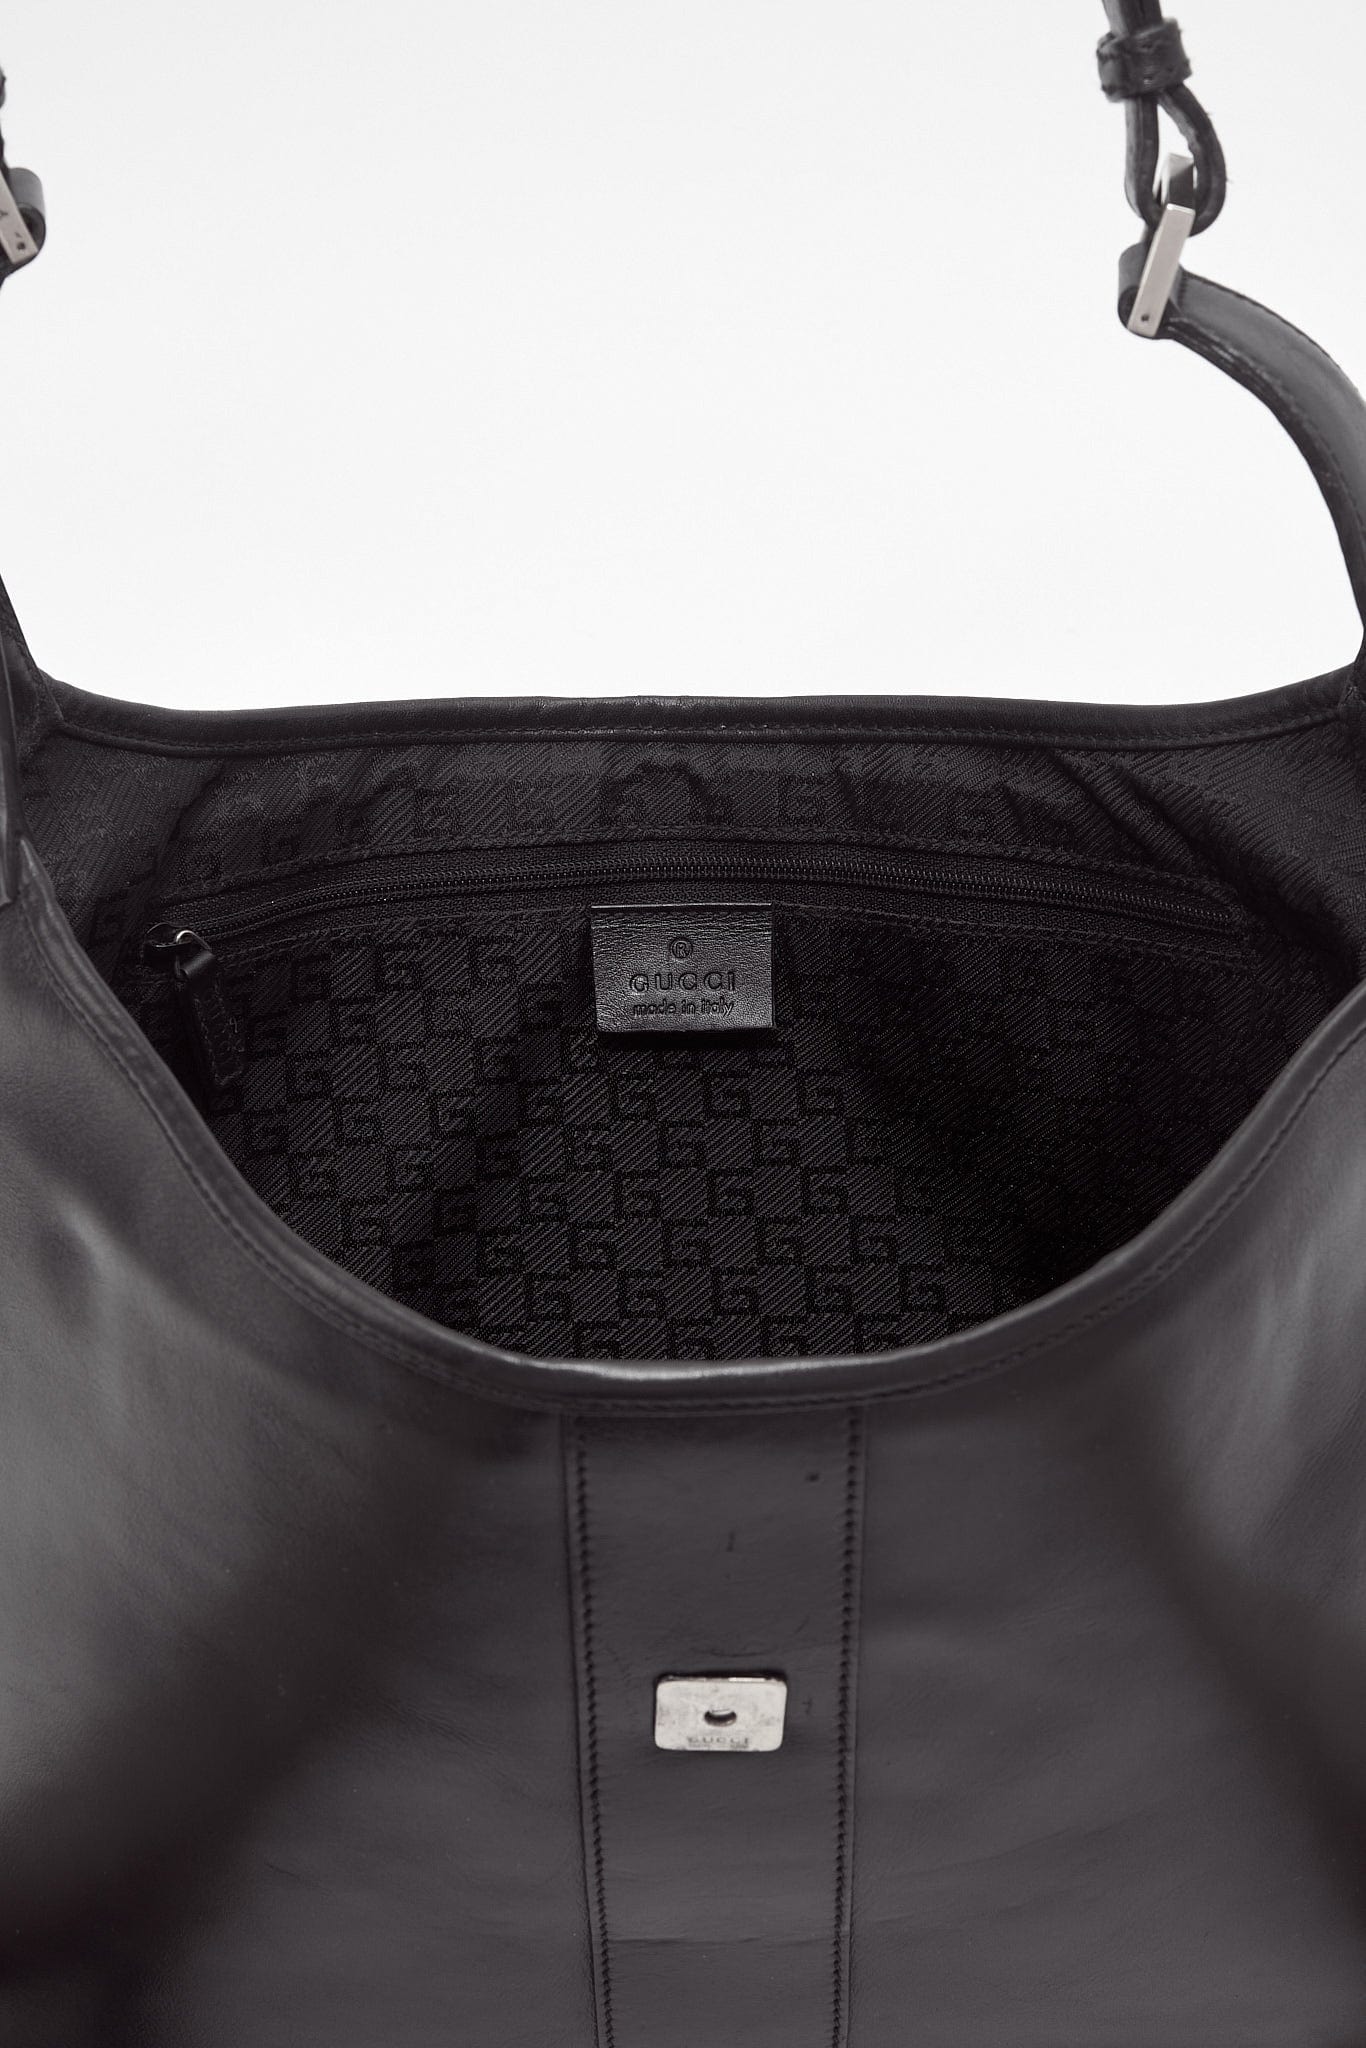 Gucci Dionysis Leather Black Shoulder Bag